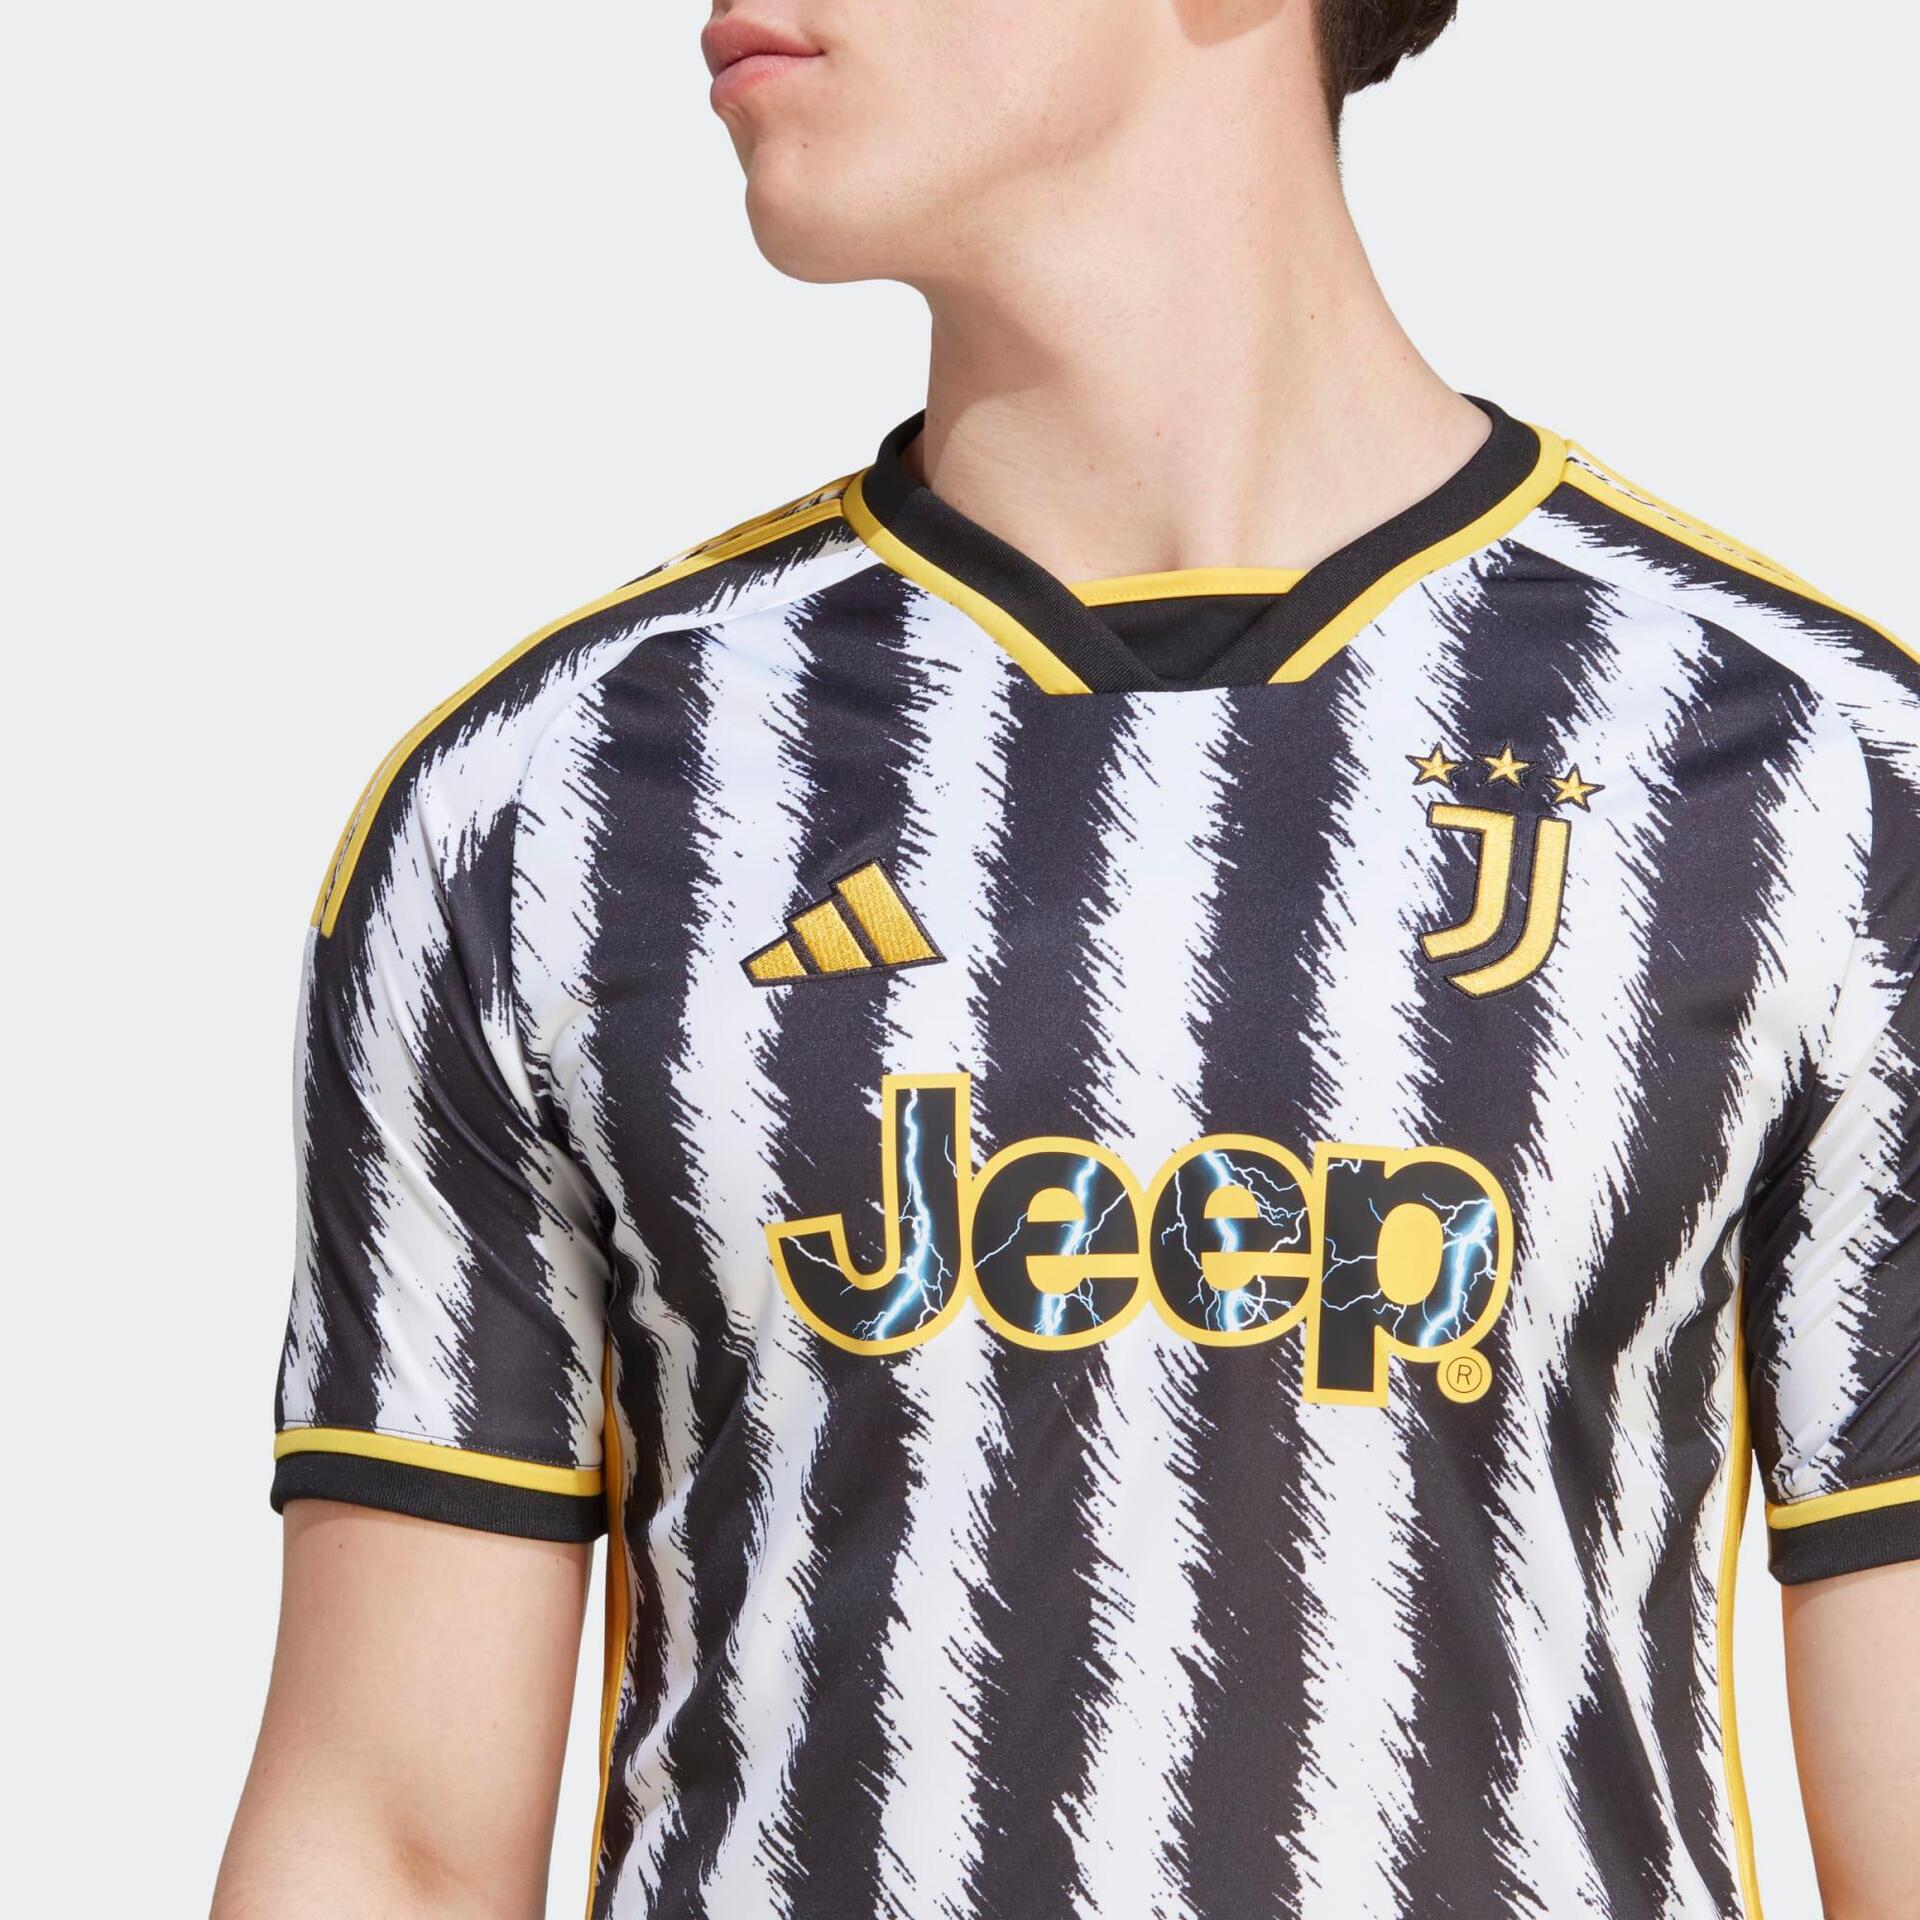 Maillot de football Adidas de la Juventus pour les joueurs et les supporters